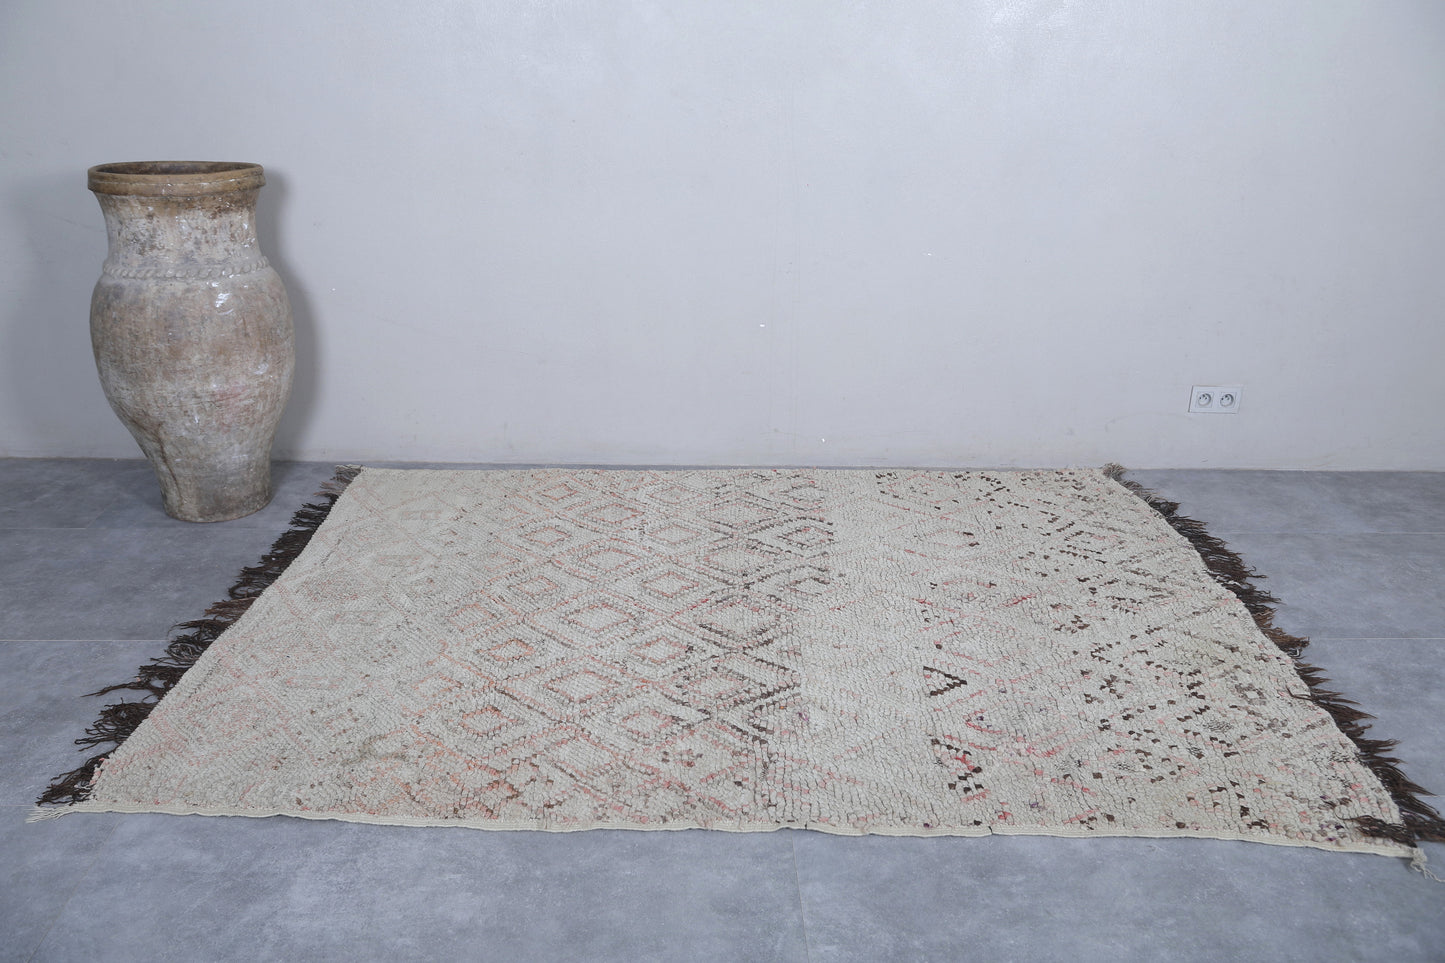 Moroccan rug 5.6 X 7.9 Feet